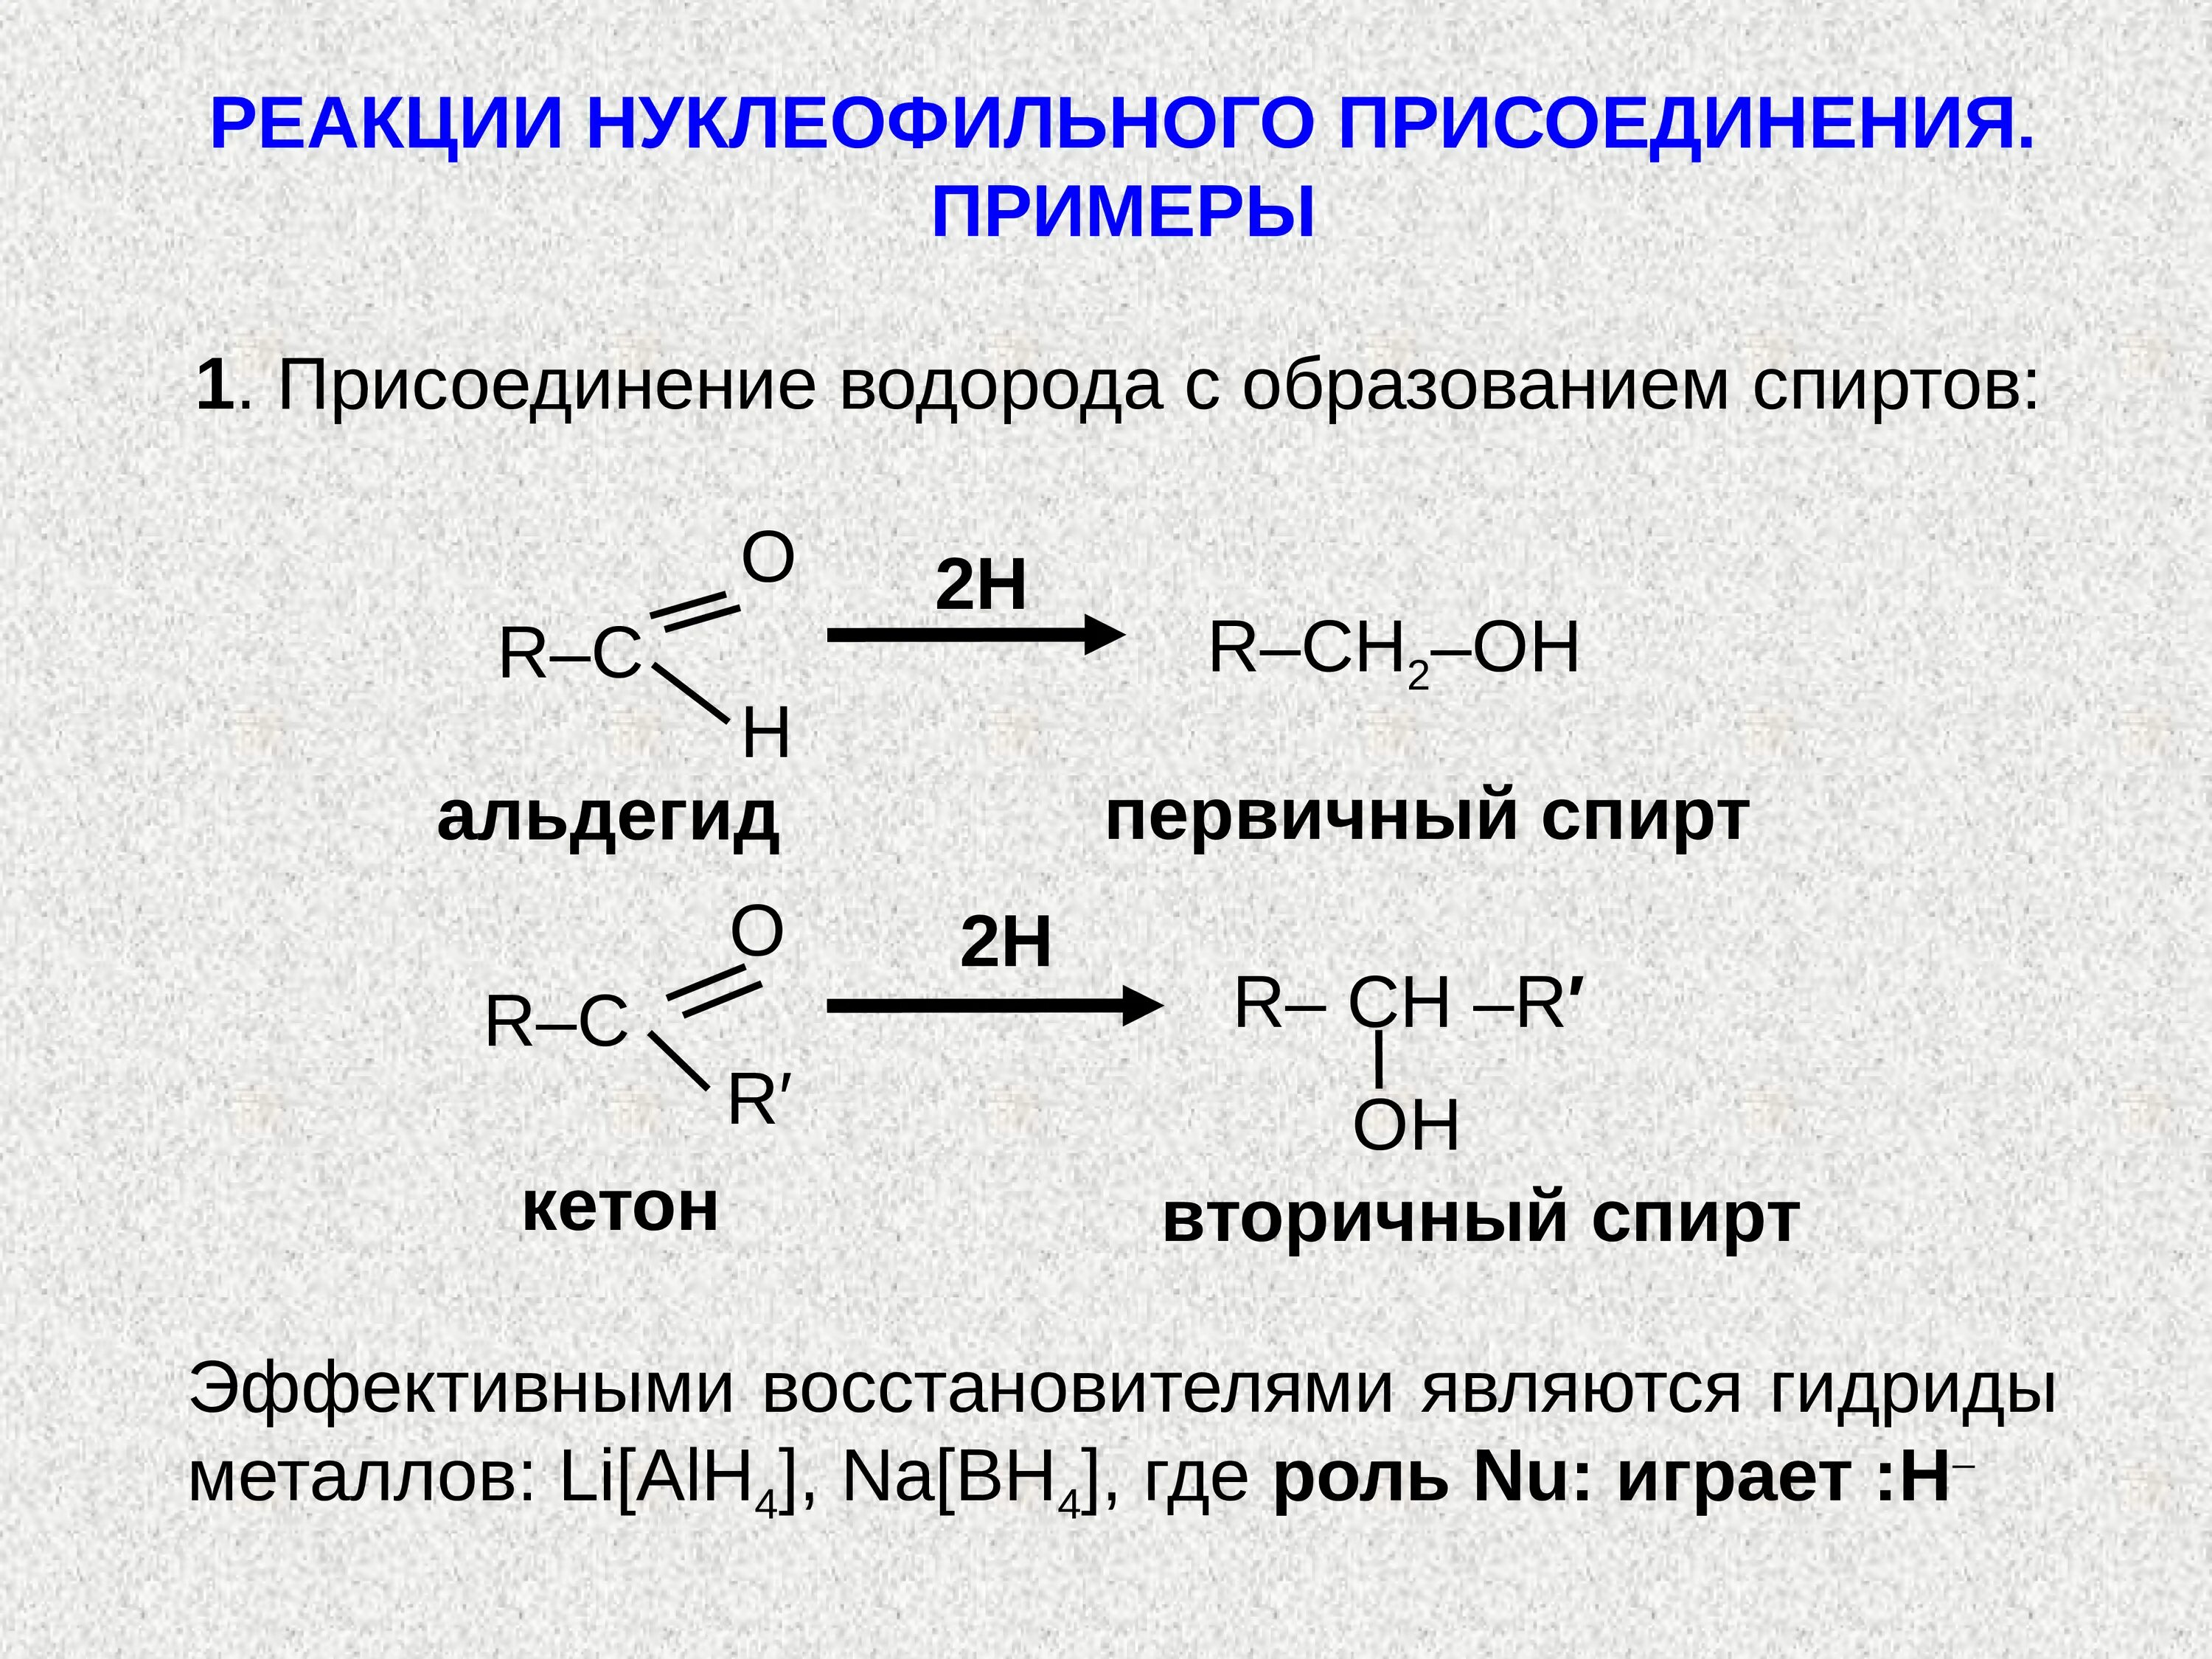 Реакция образования этилового спирта. Реакция нуклеофильного присоединения альдегидов. Присоединение спиртов альдегидов и кетонов. Нуклеофильное присоединение альдегидов и кетонов. Реакции нуклеофильного присоединения альдегидов и кетонов.